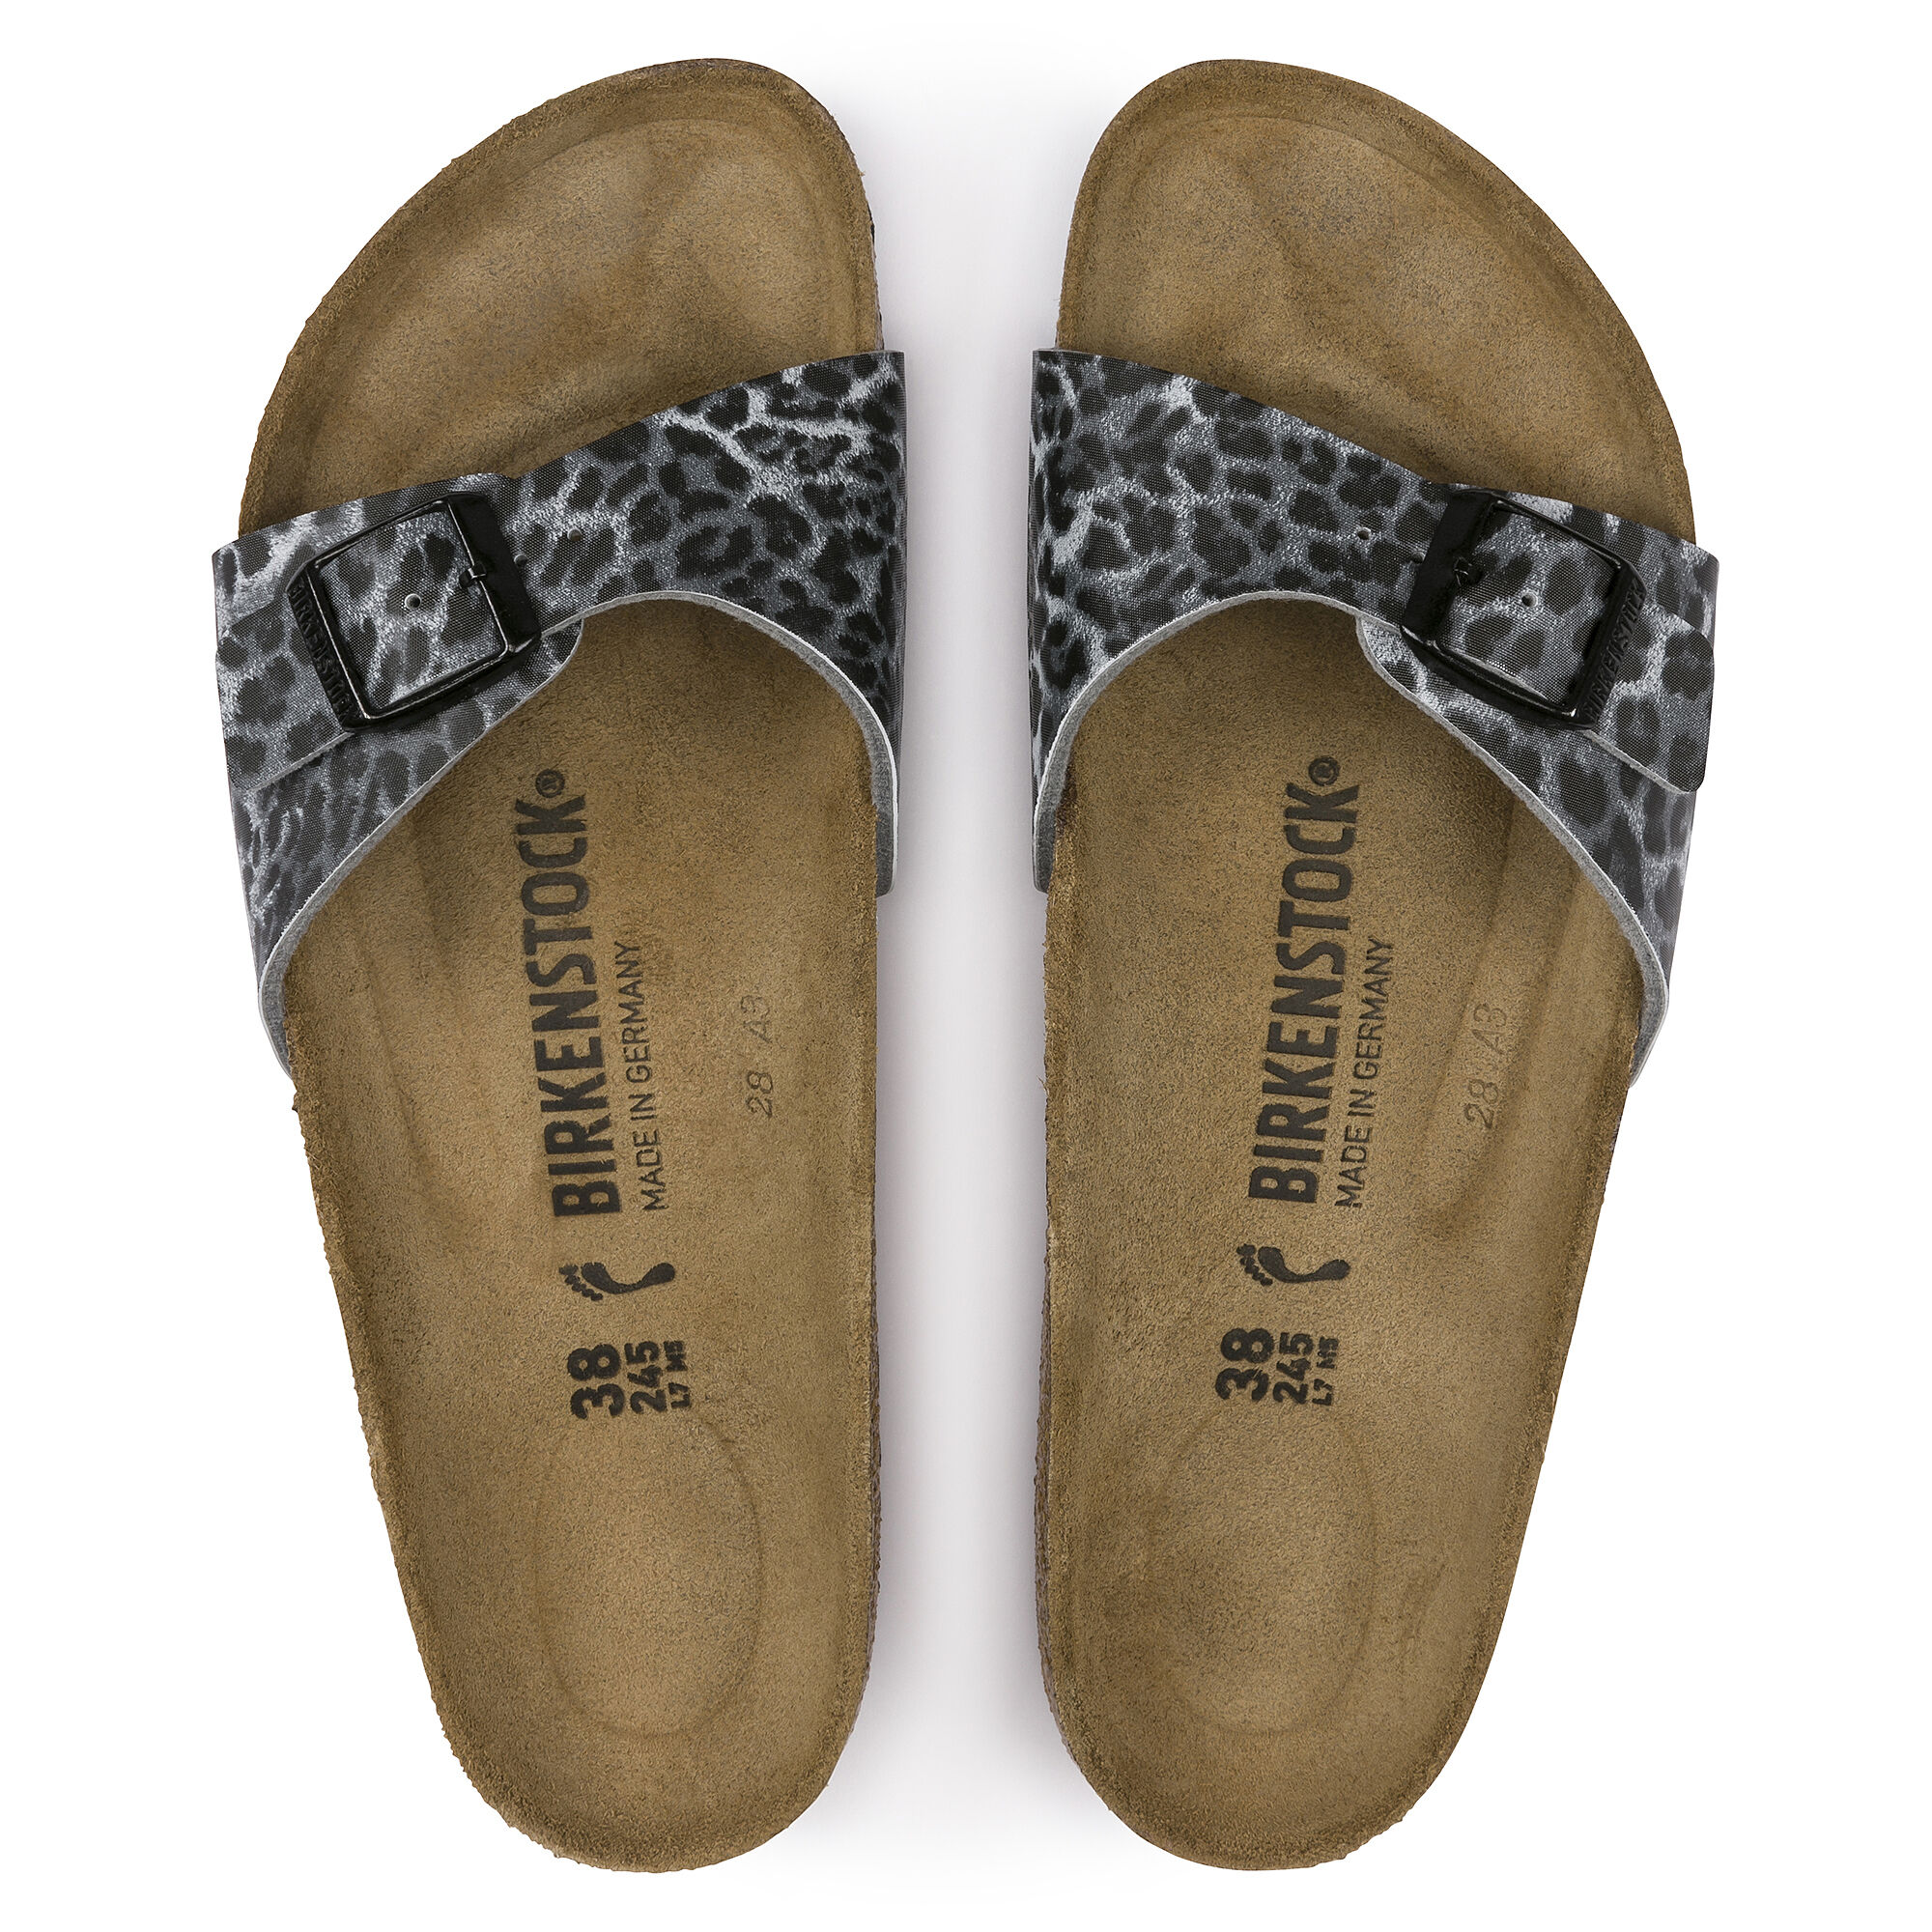 animal print birkenstock sandals